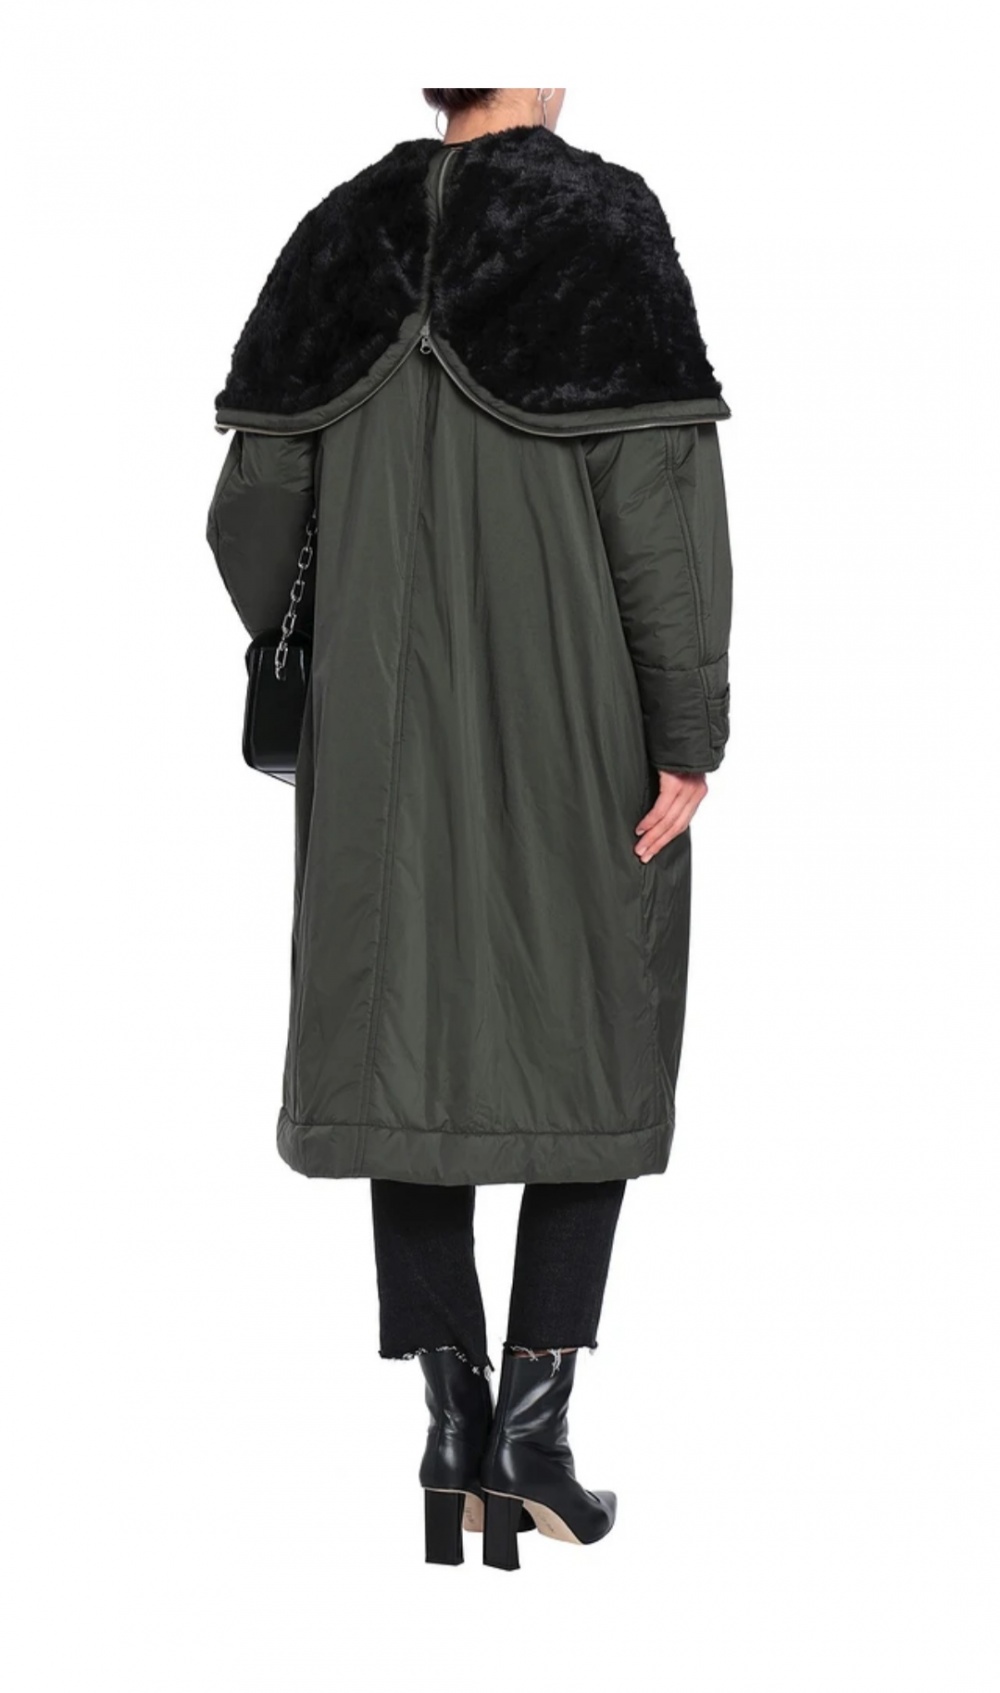 Пуховик, пуховое пальто McQ Alexander McQueen, размер 48 IT, 50-52 рос.